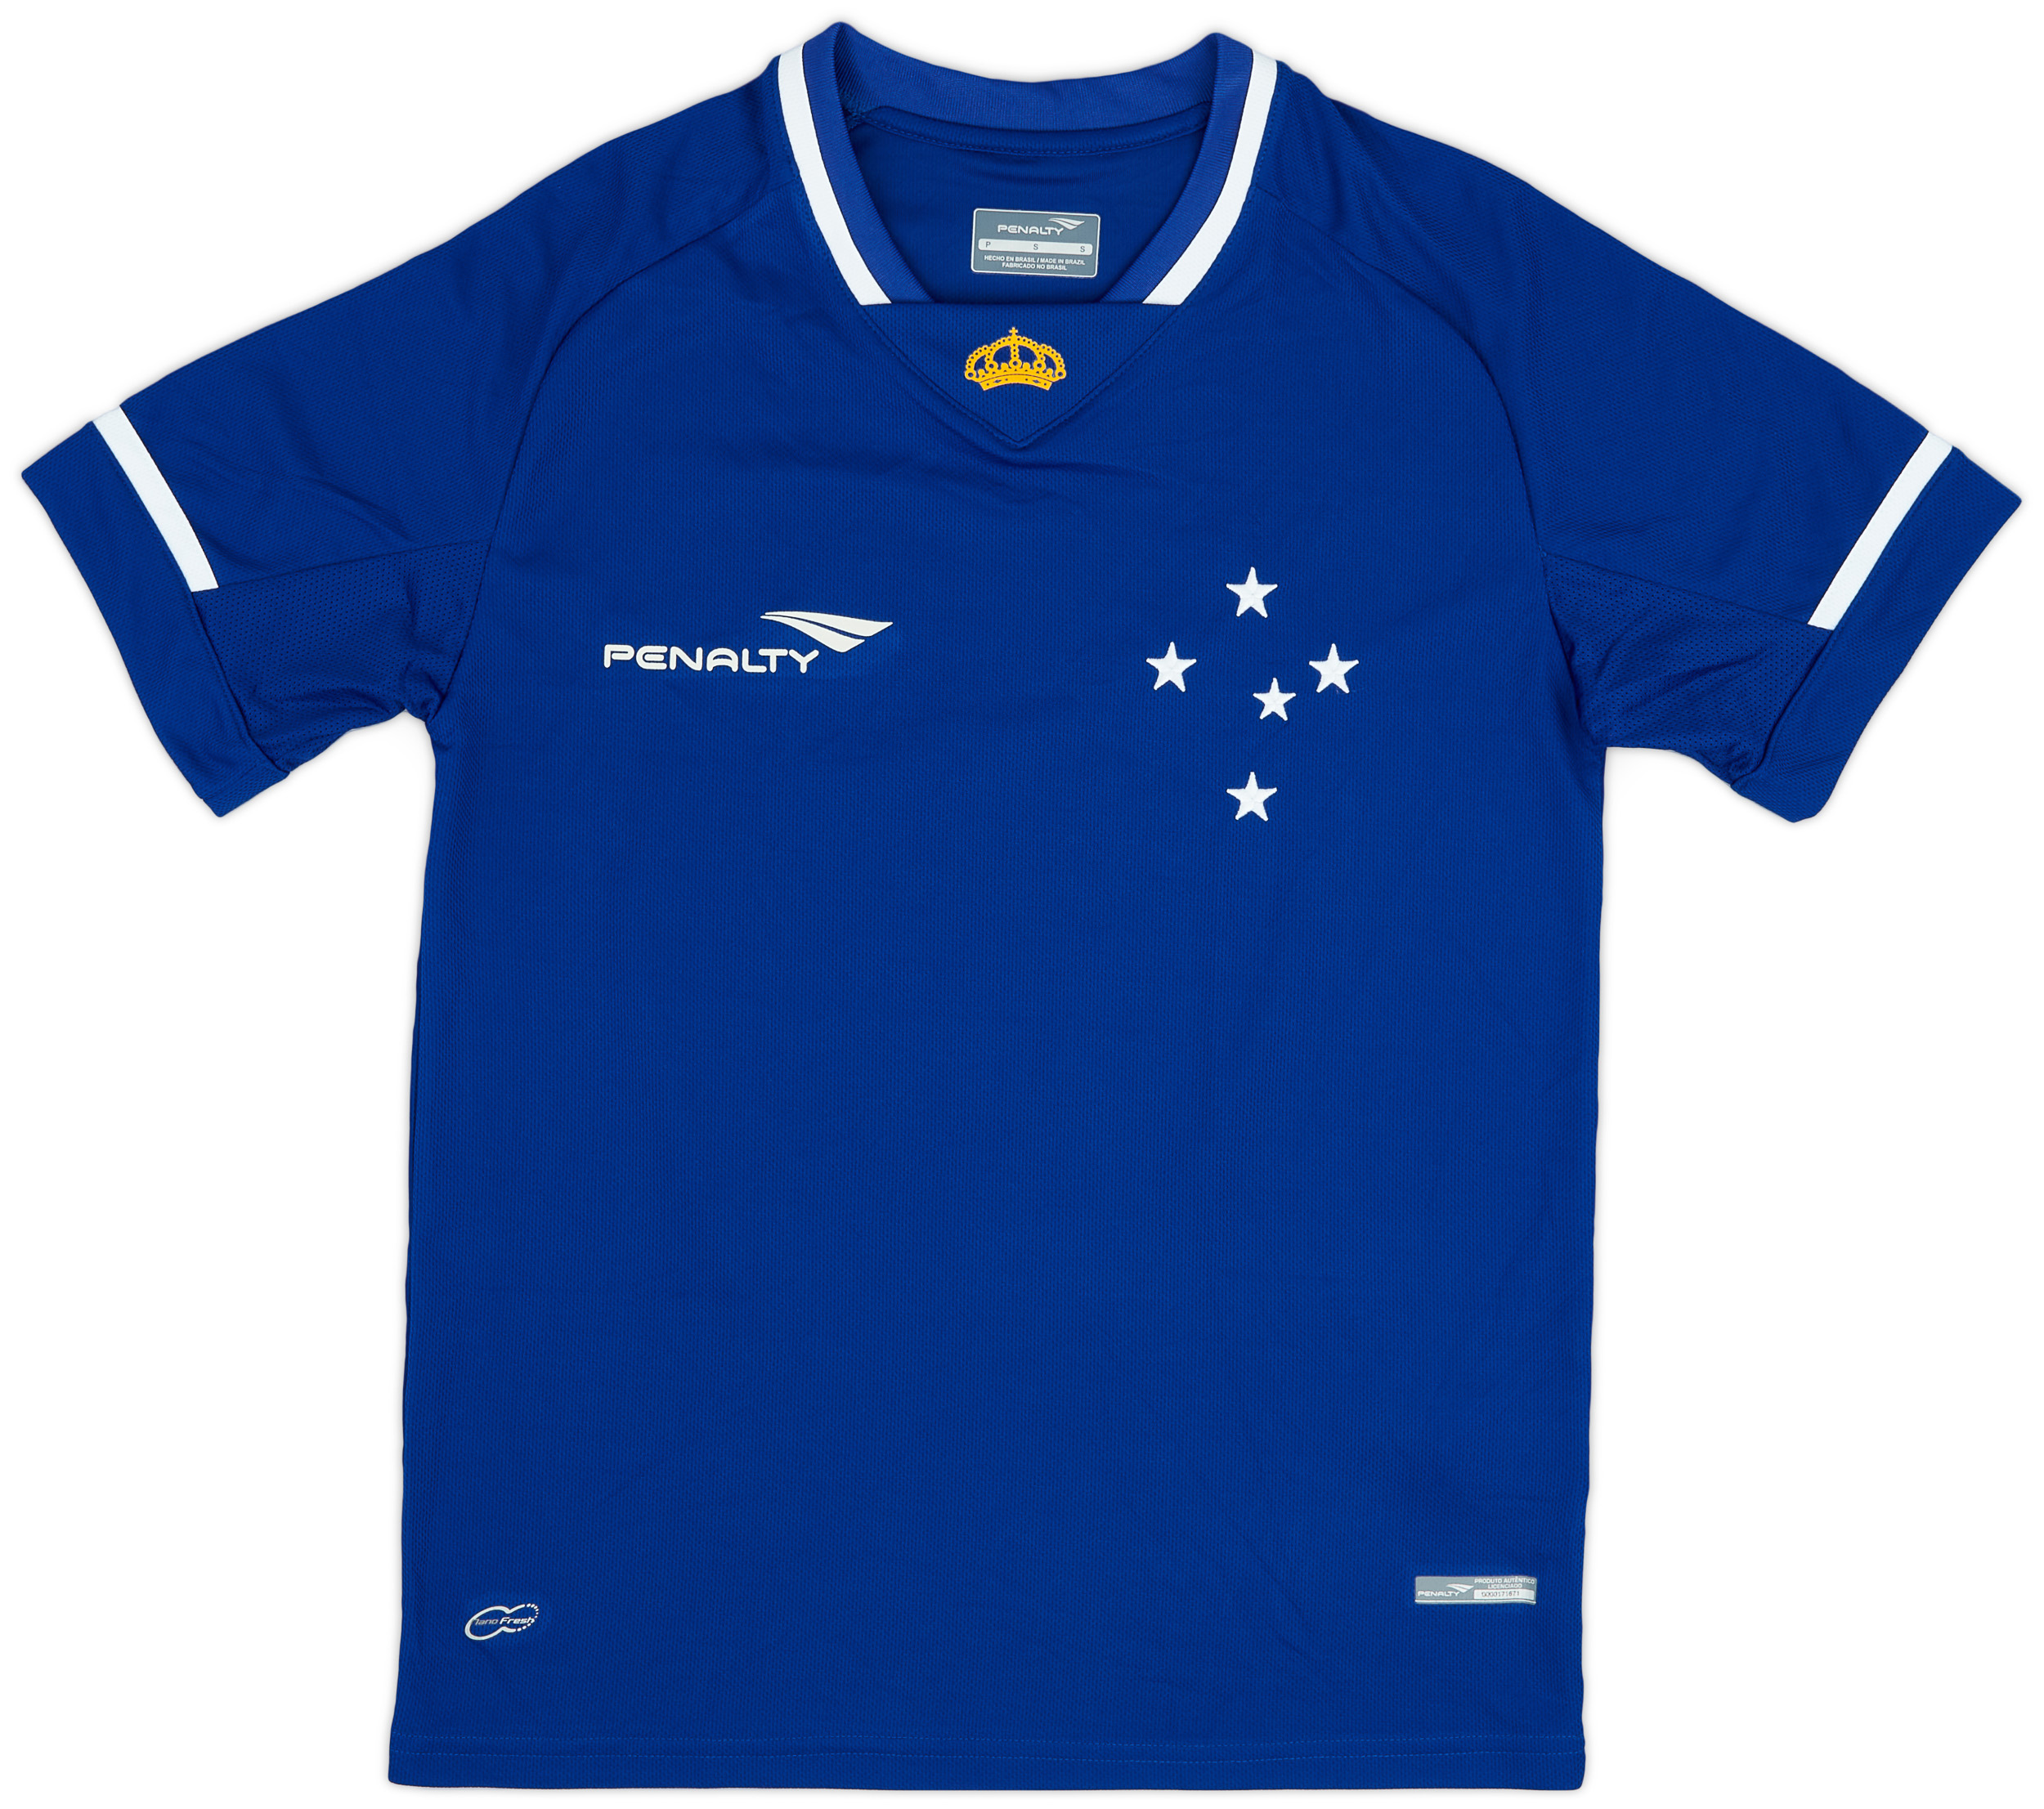 2015 Cruzeiro Home Shirt #10 (De Arrascaeta) - 9/10 - ()